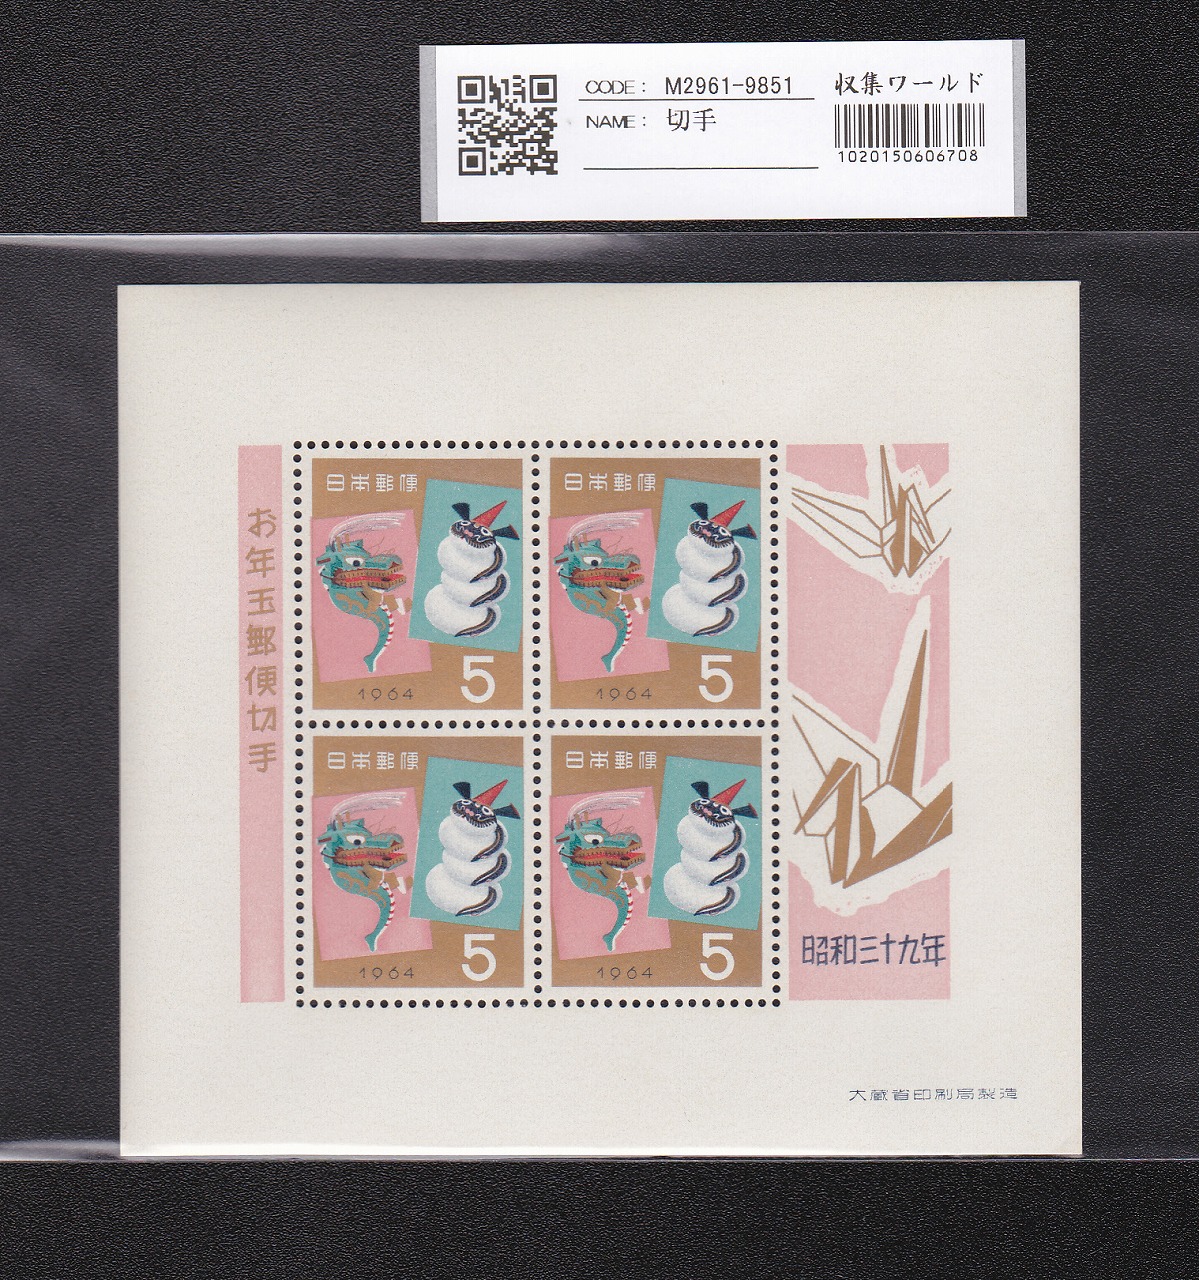 お年玉 郵便切手 昭和39年(1964)大蔵省発行 5円×4枚小型シート 未使用